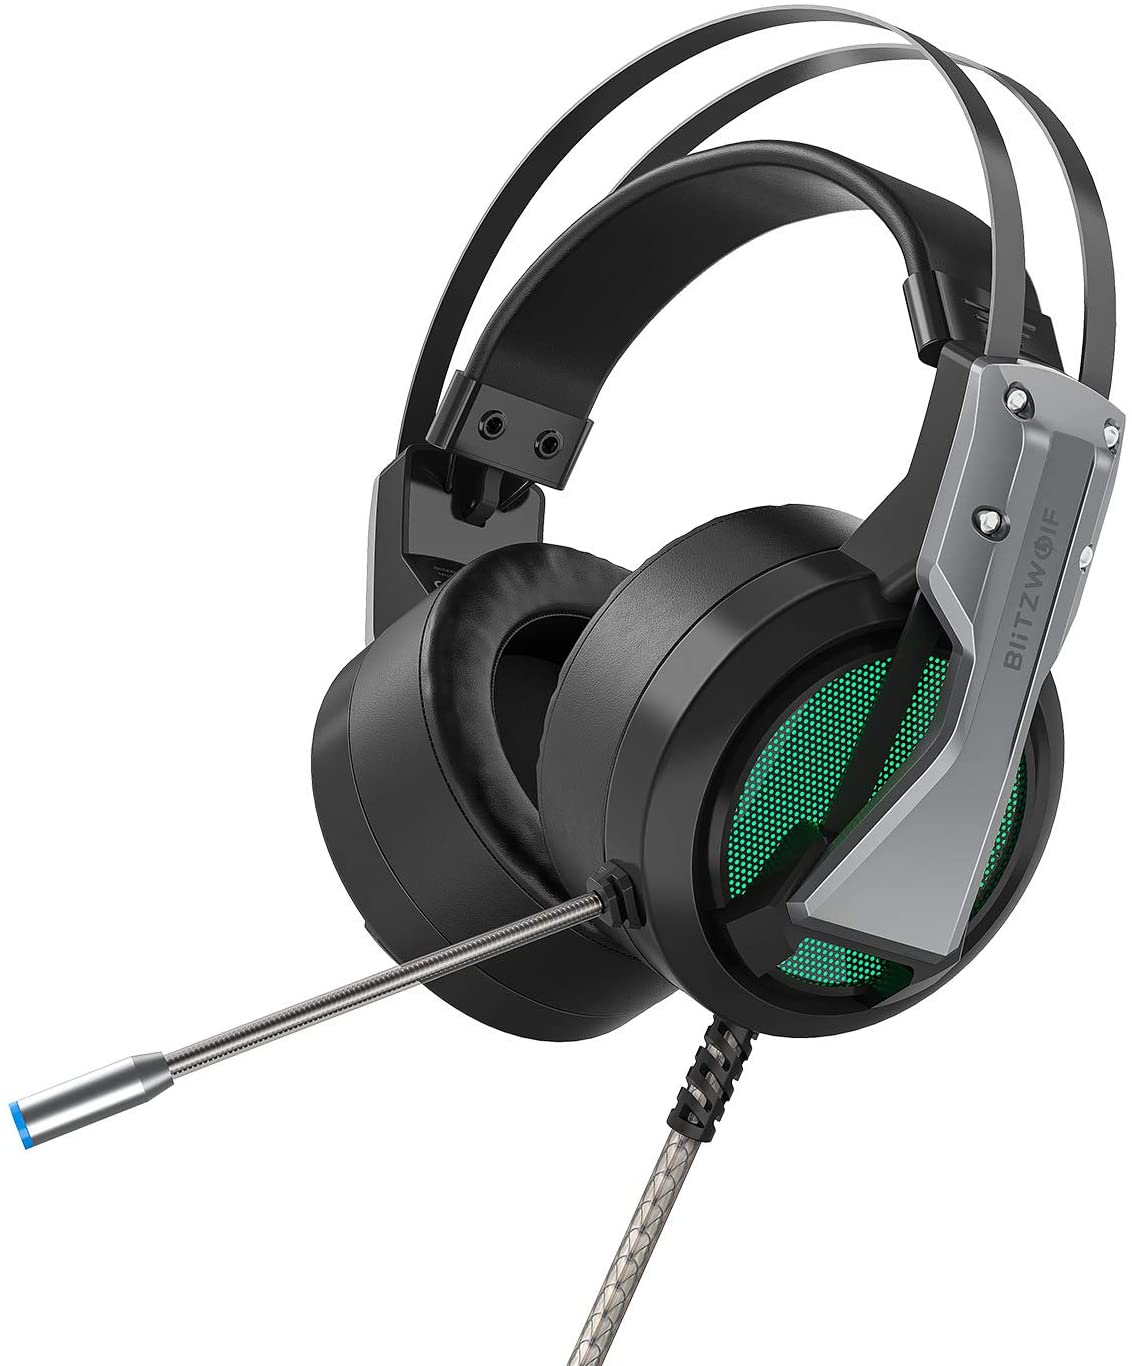 Bild zu 7.1 Surround Sound BlitzWolf Over-Ear Gaming Headset mit Geräuschunterdrückung für 25,89€